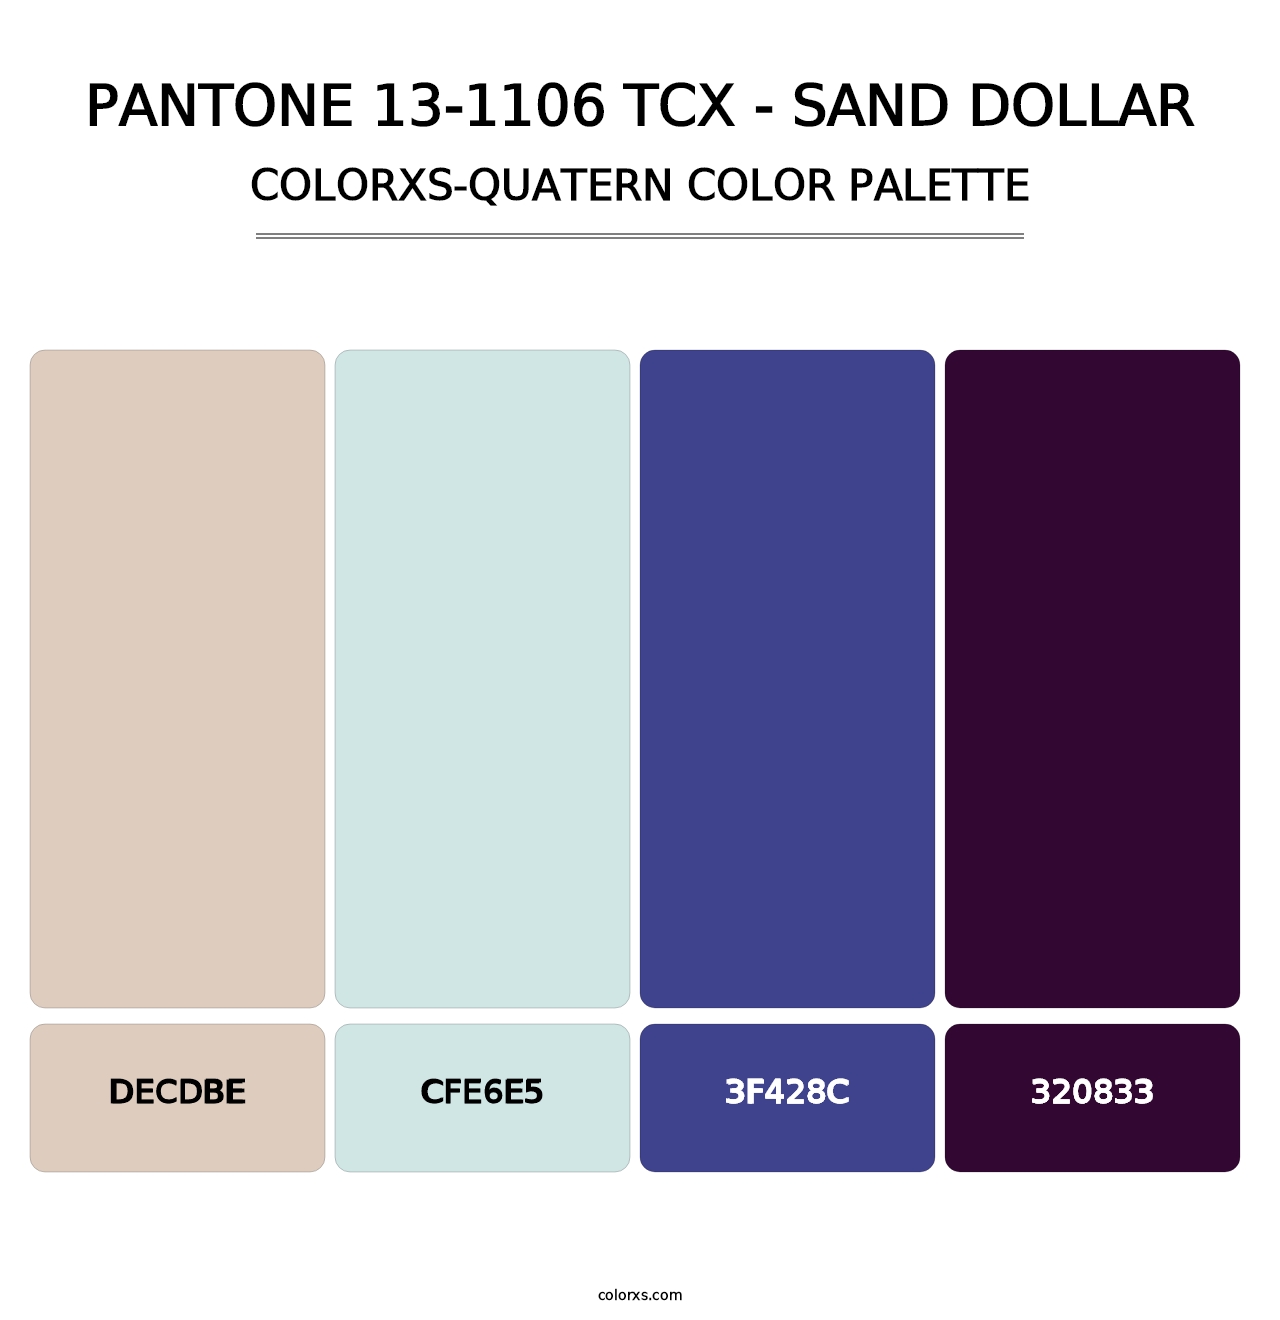 PANTONE 13-1106 TCX - Sand Dollar - Colorxs Quatern Palette